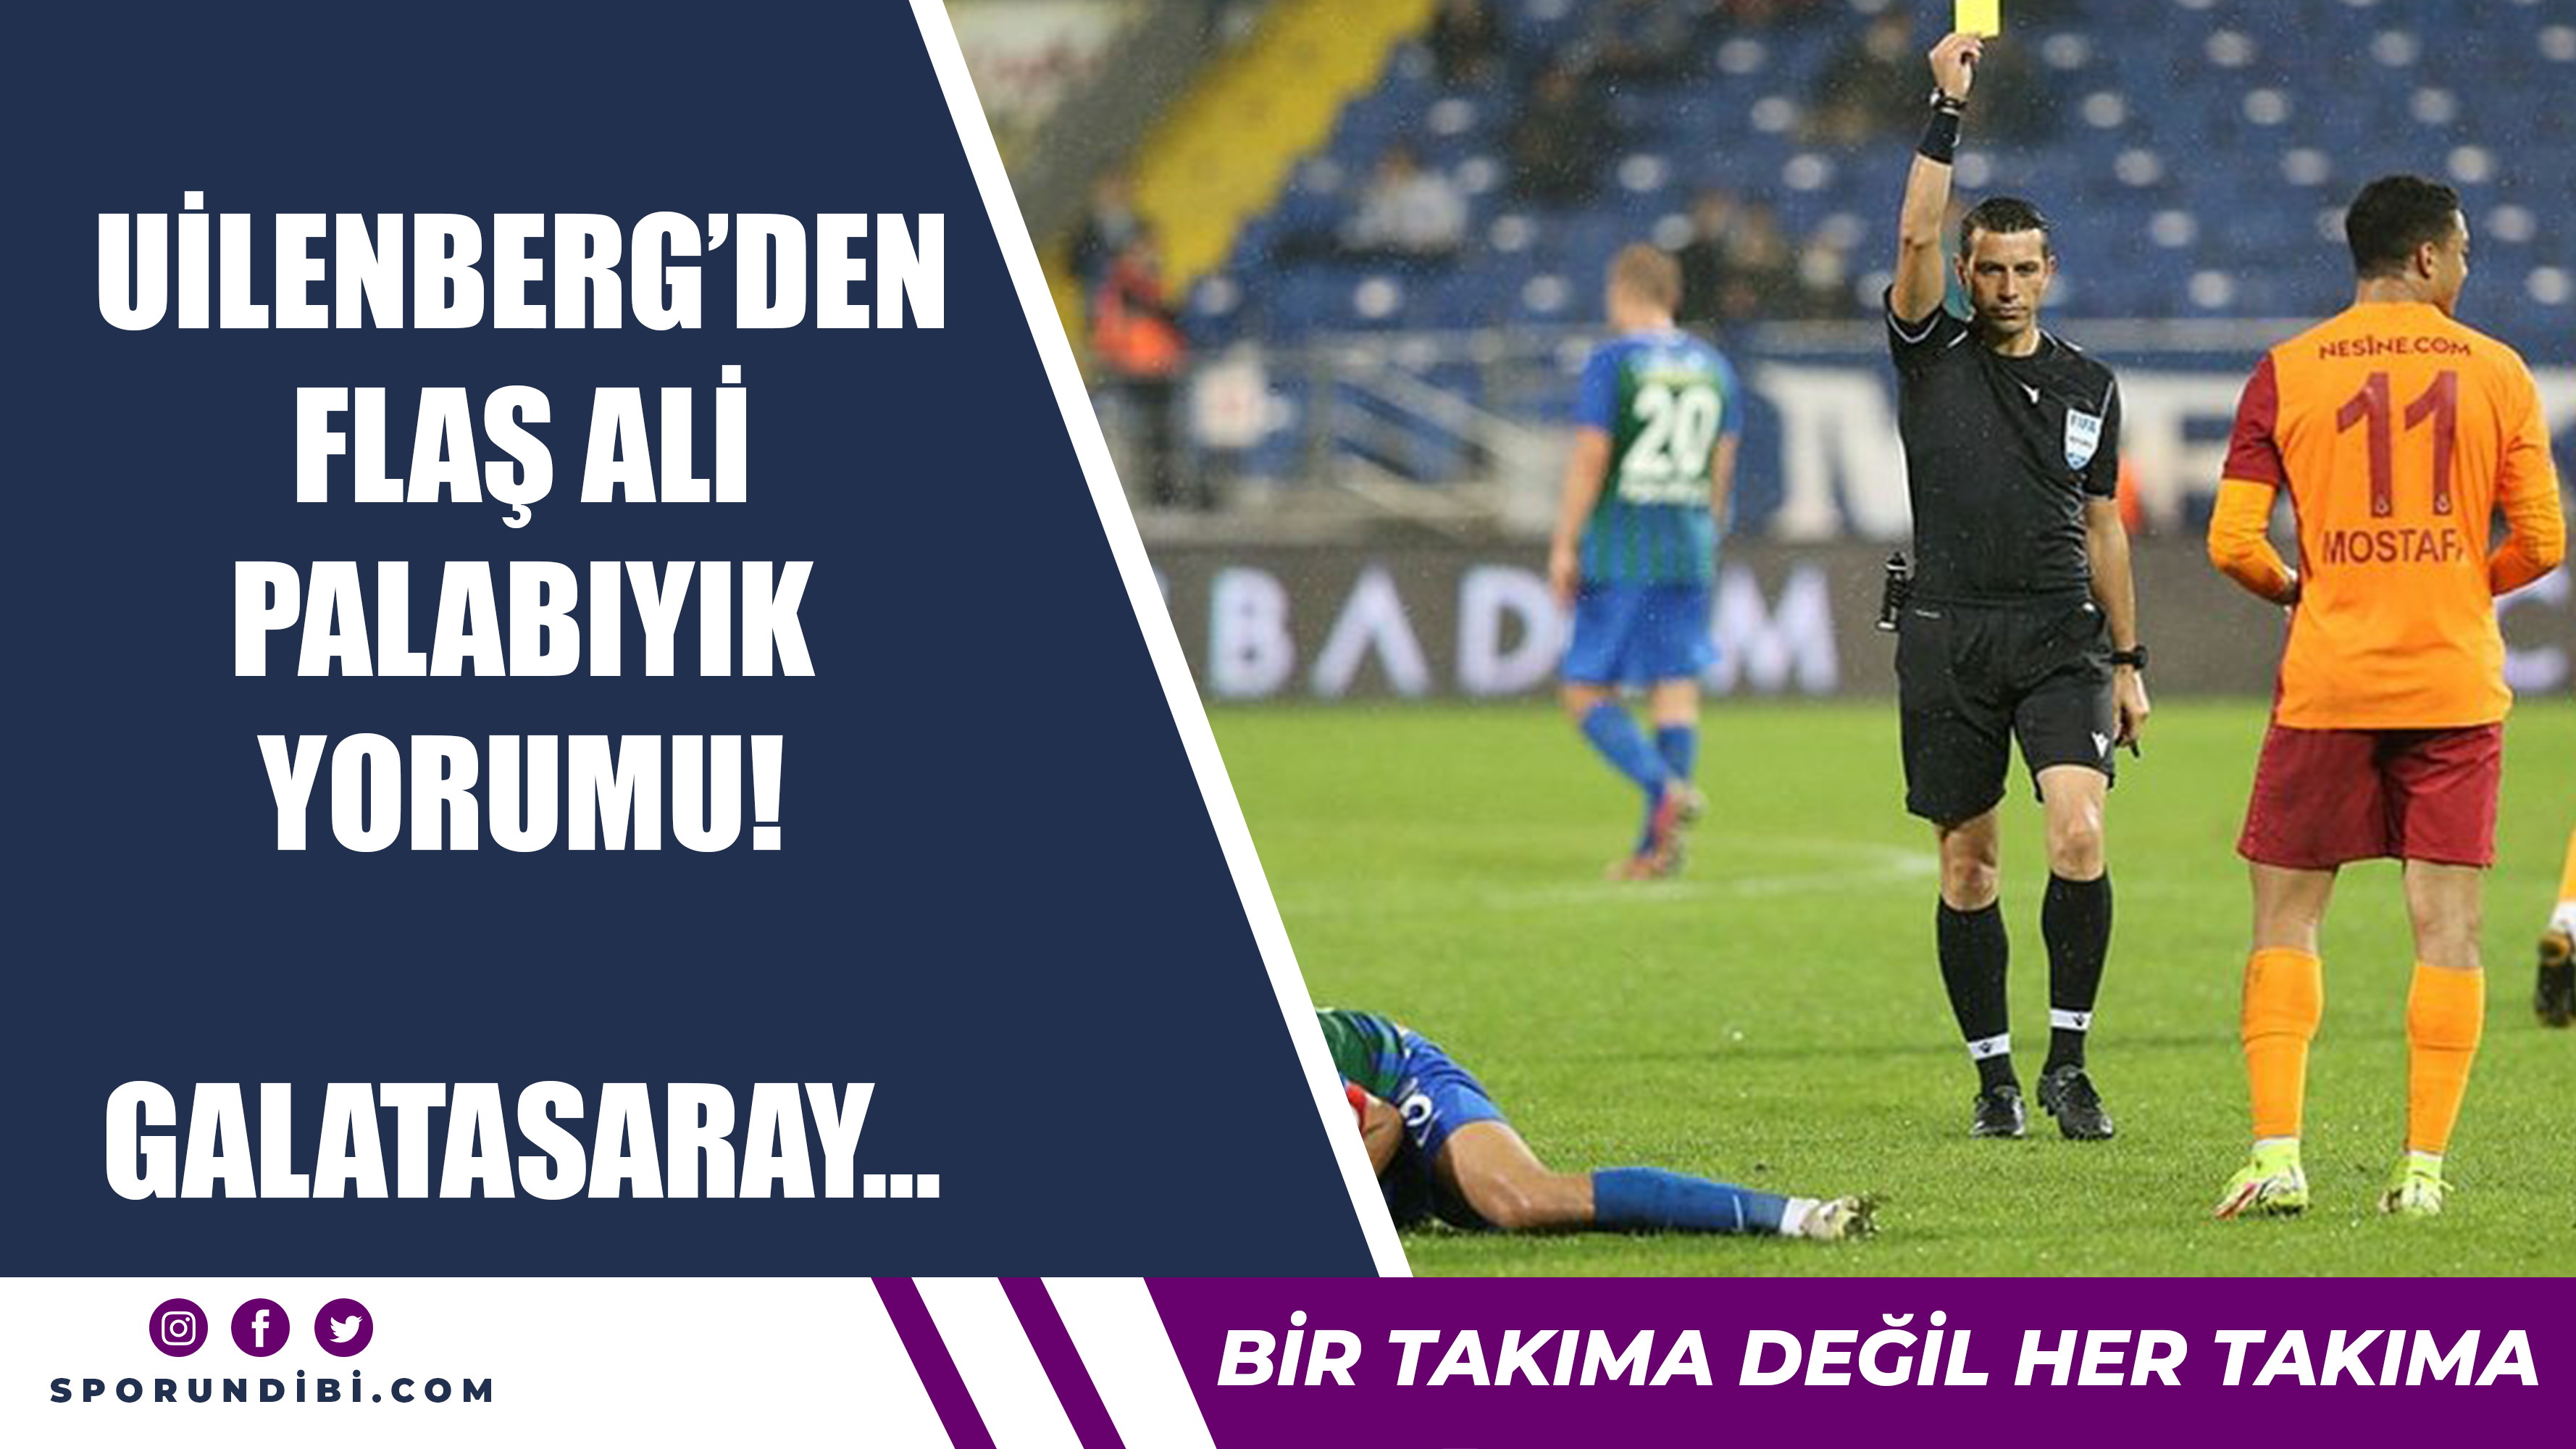 Uilenberg'den flaş Ali Palabıyık yorumu! Galatasaray...